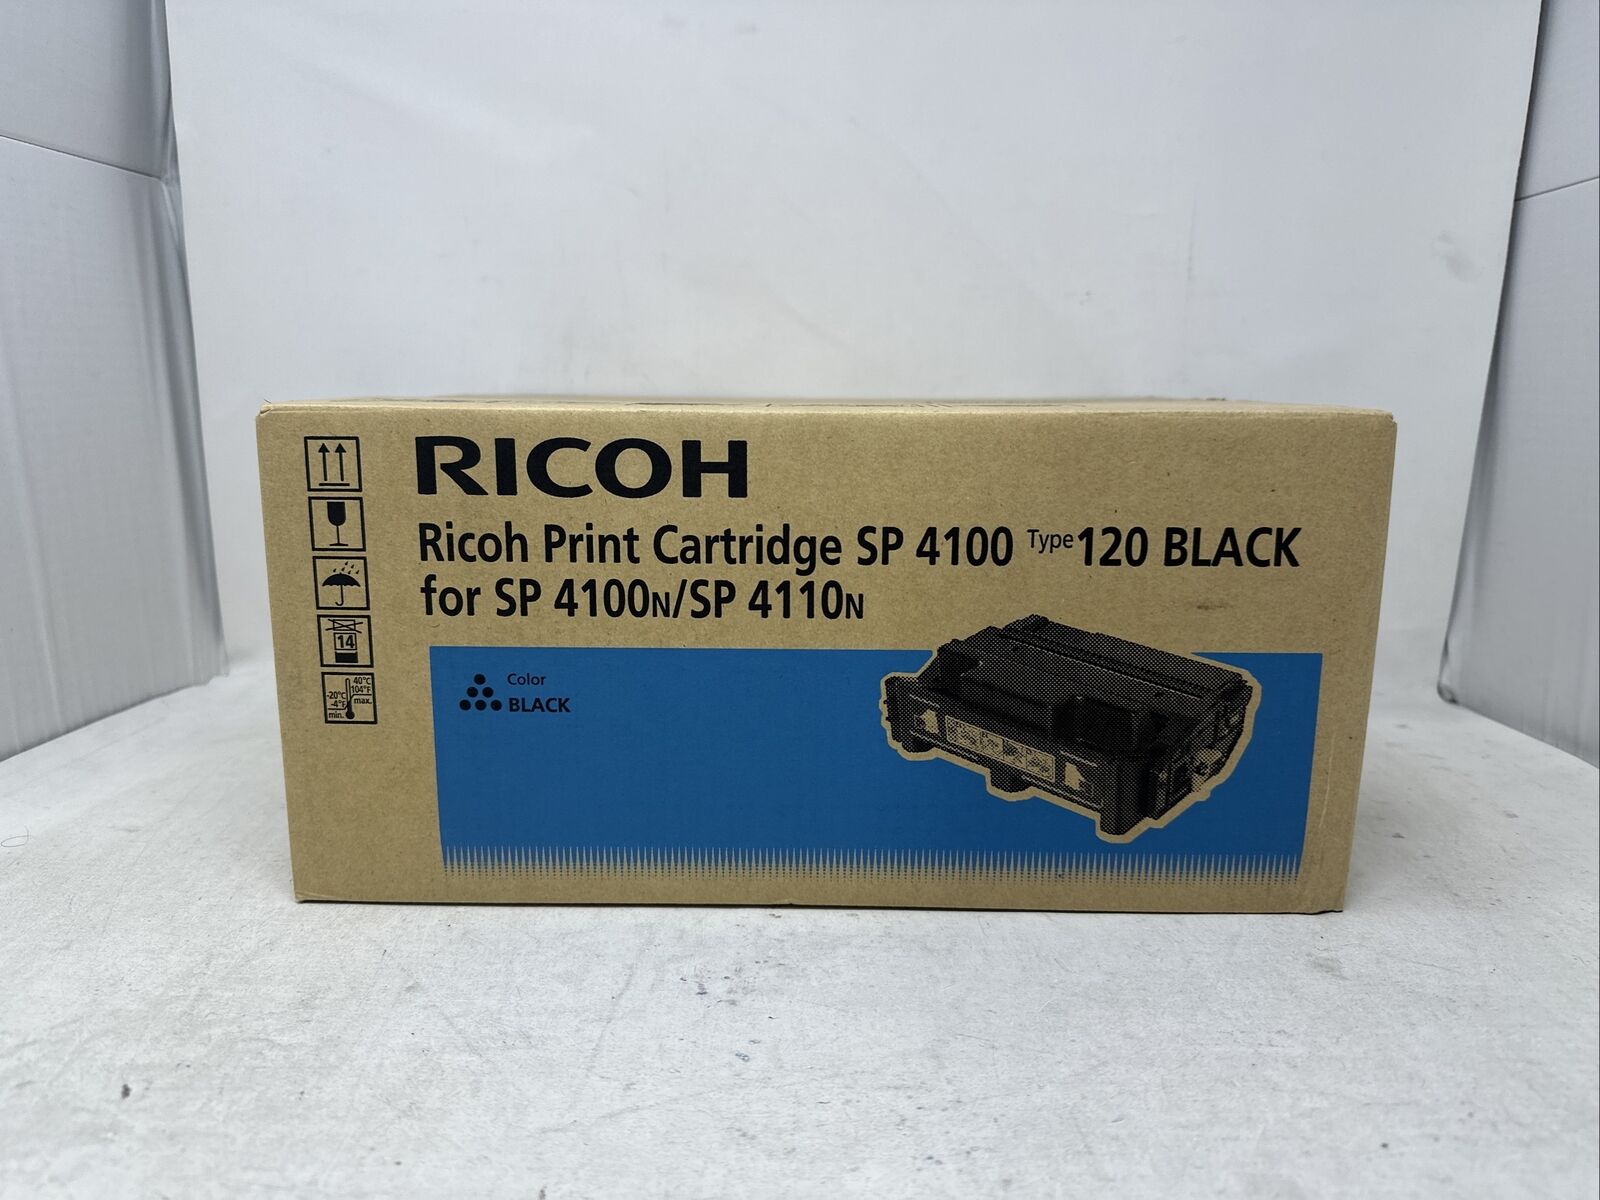 Ricoh 406997 Type 120 Black Toner for SP 4100N, 4100N-KP, 4100SF, 4110N (5524C2)